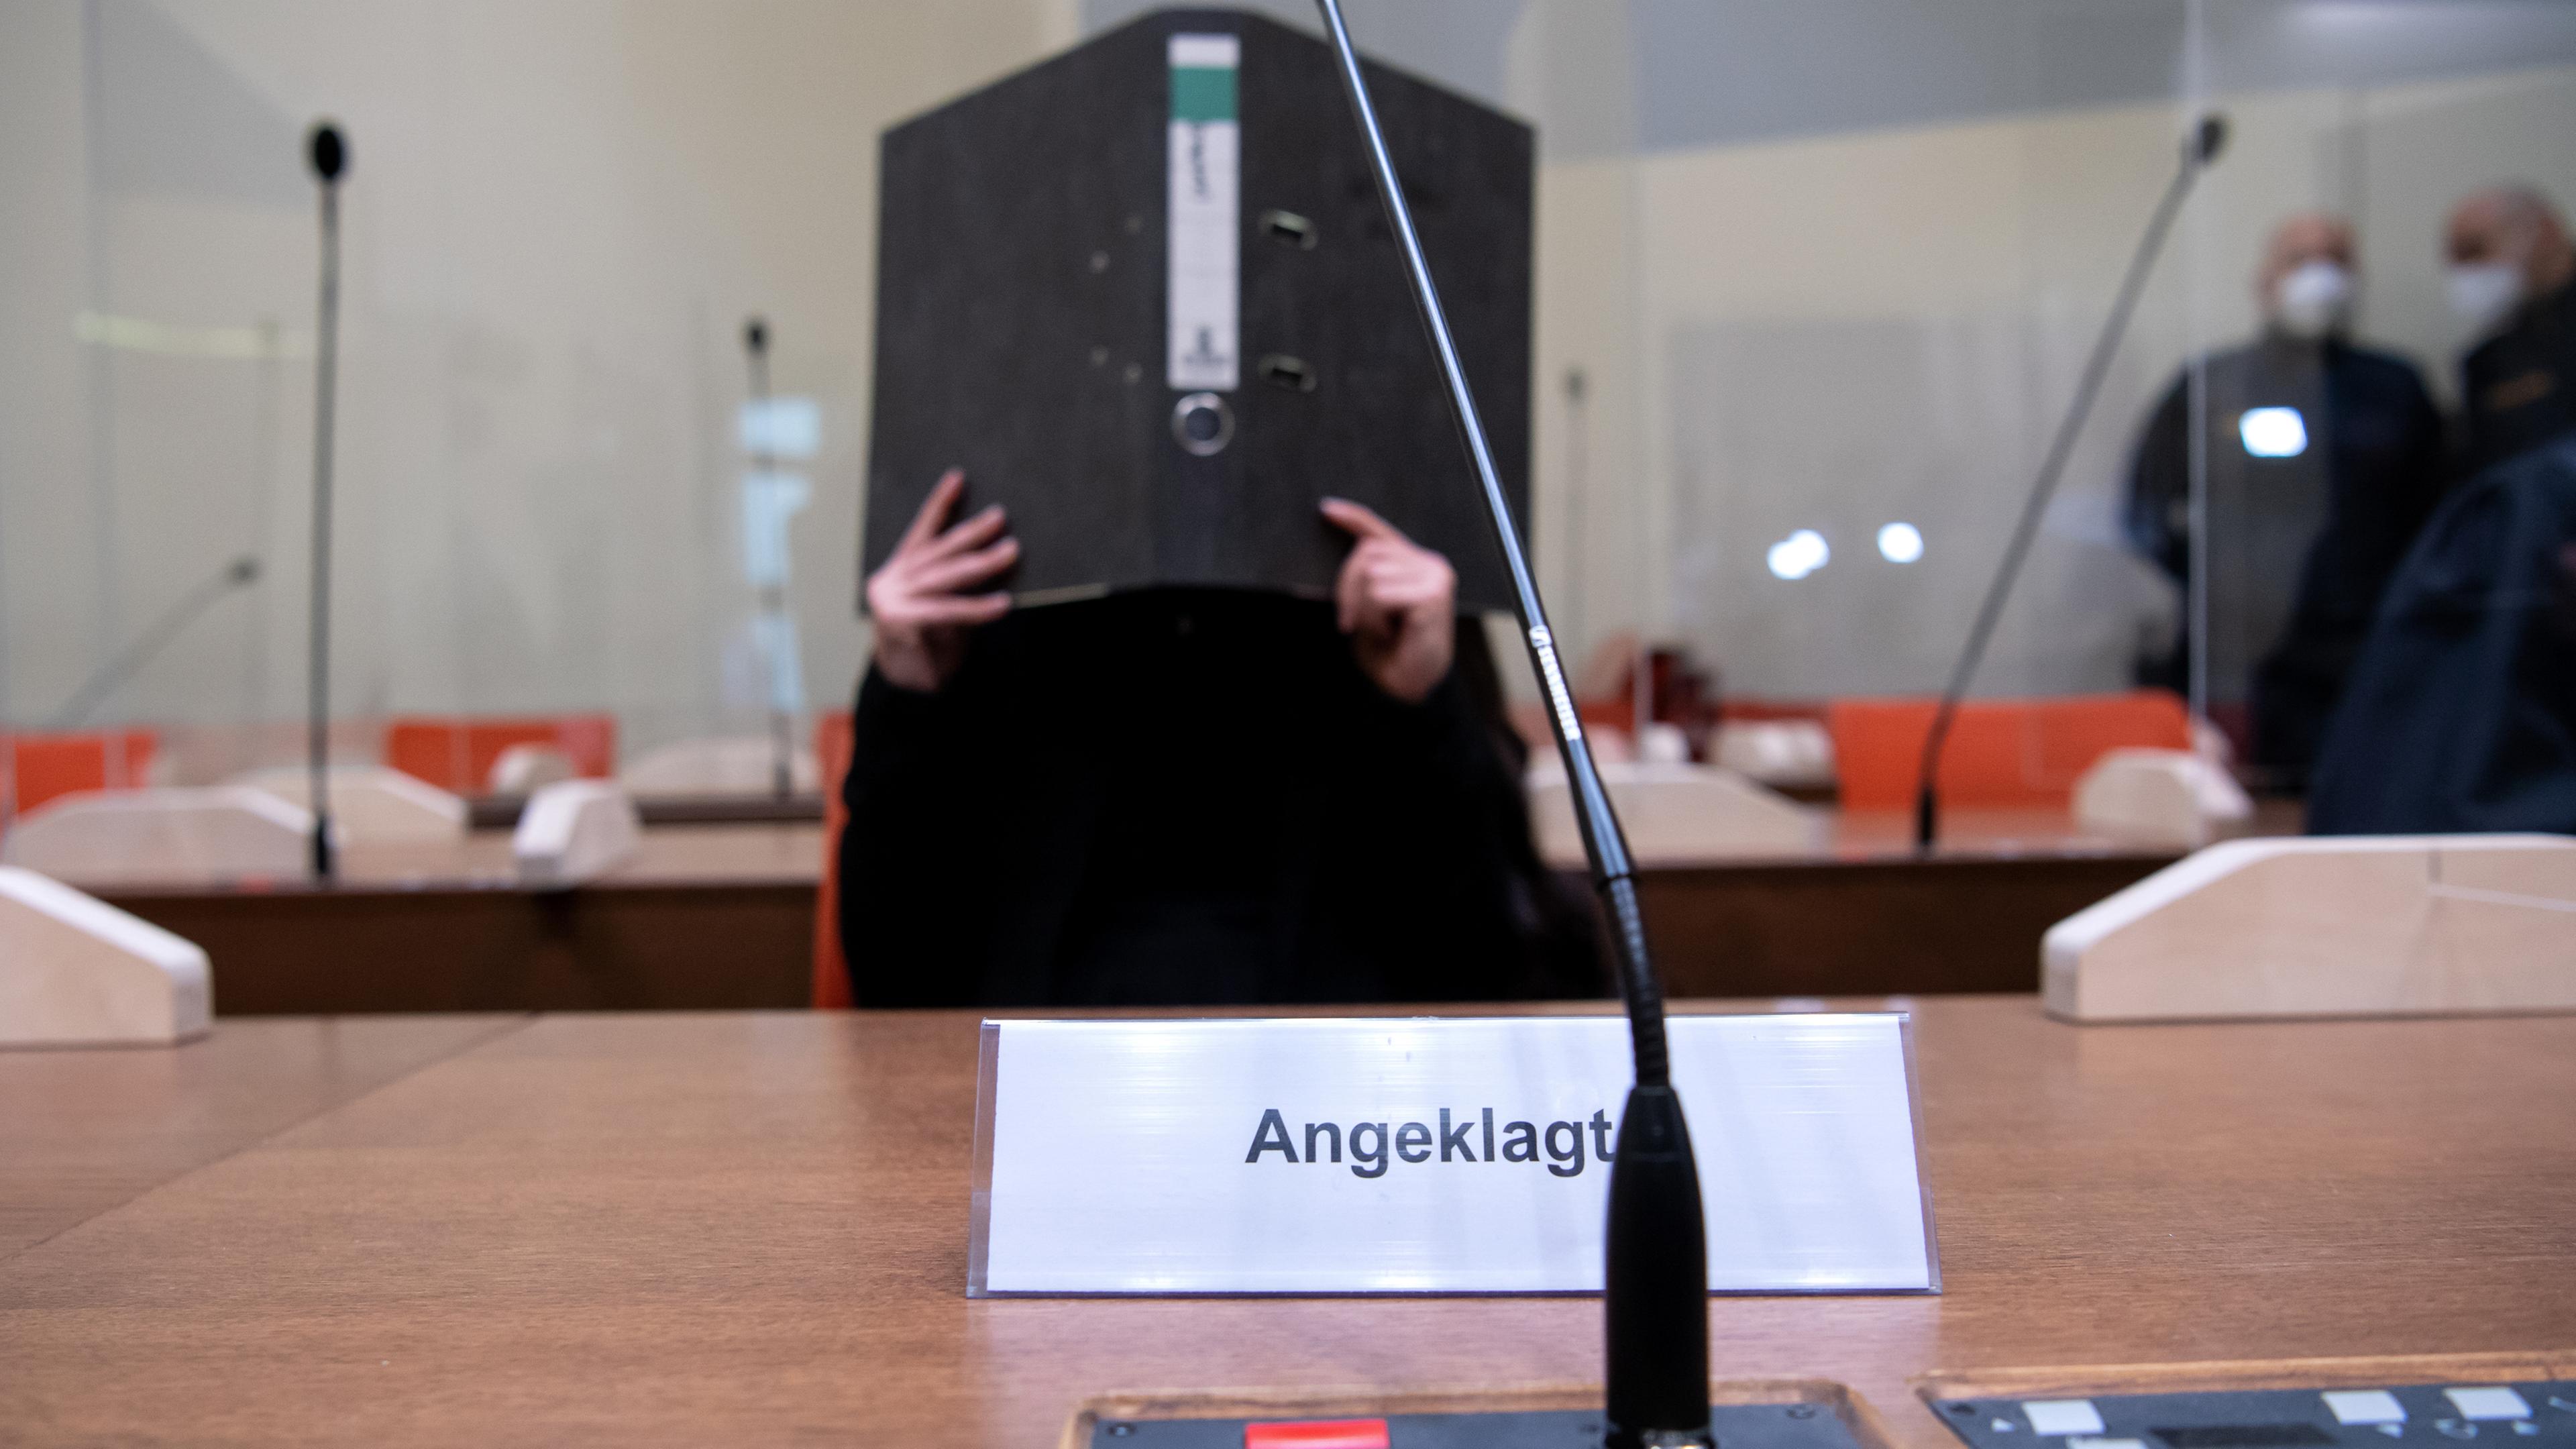 Bayern, München: Die Angeklagte Jennifer W. sitzt vor Beginn der Verhandlung im Gerichtssaal. Archivbild